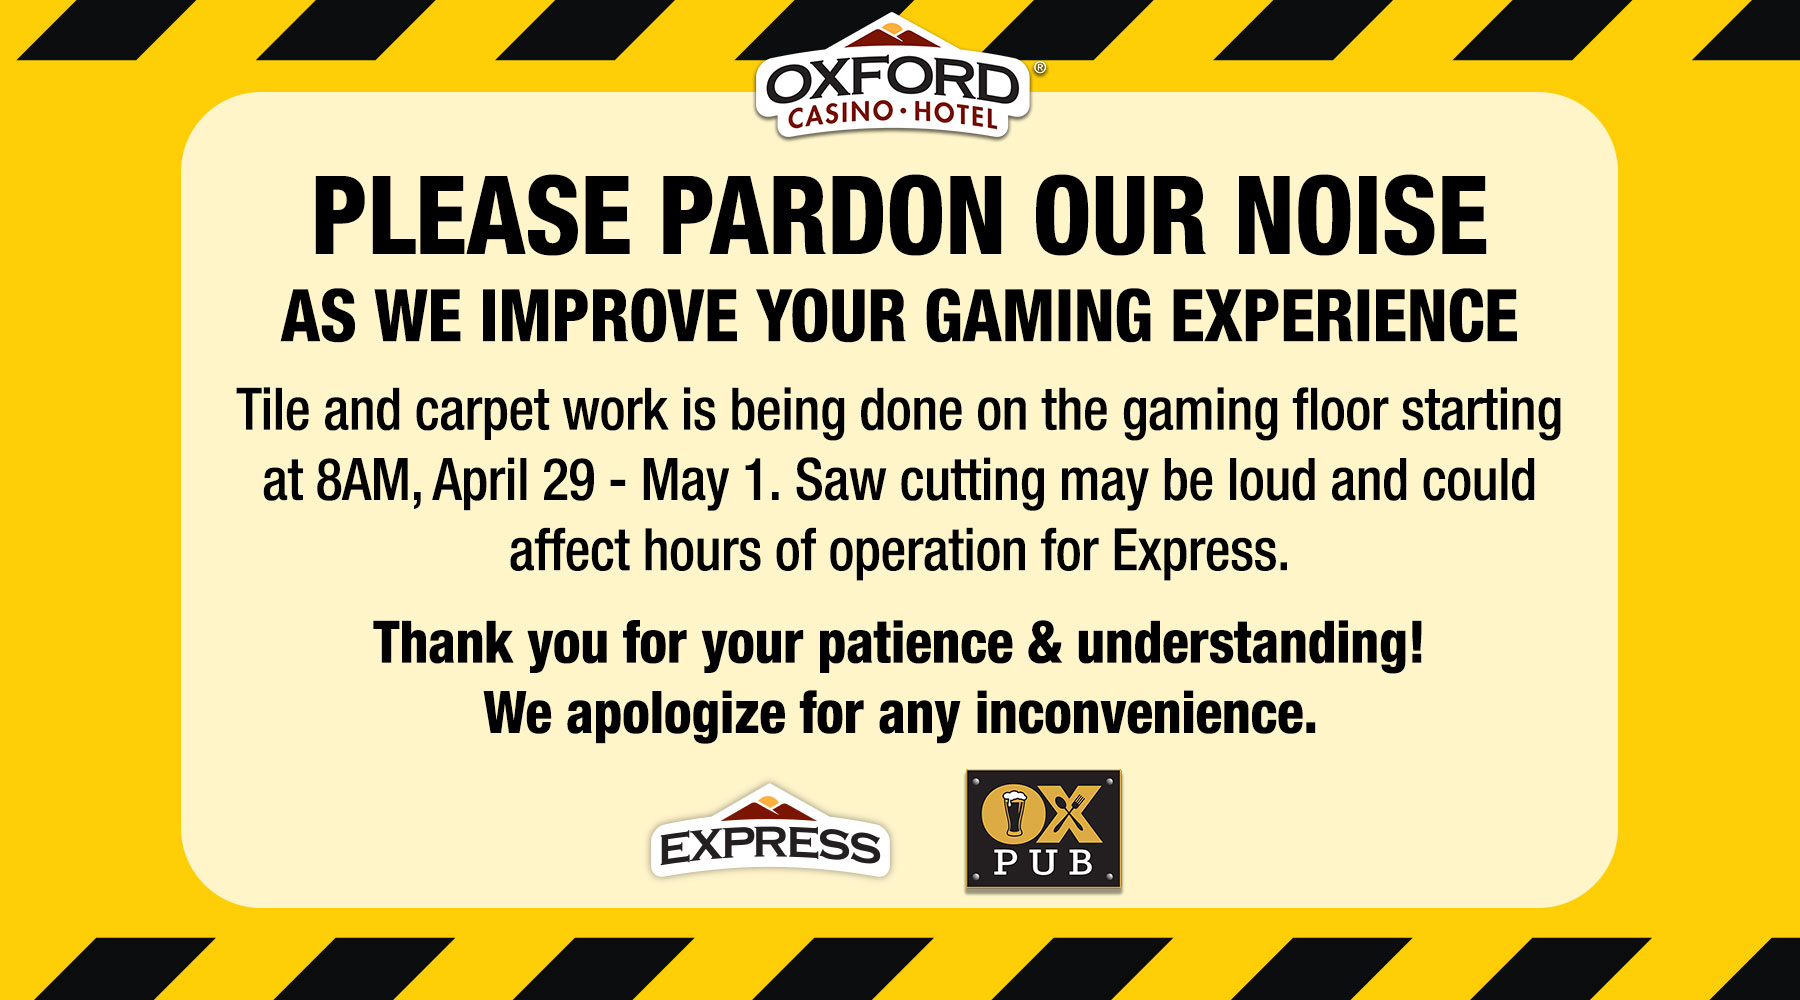 Please pardon our noise